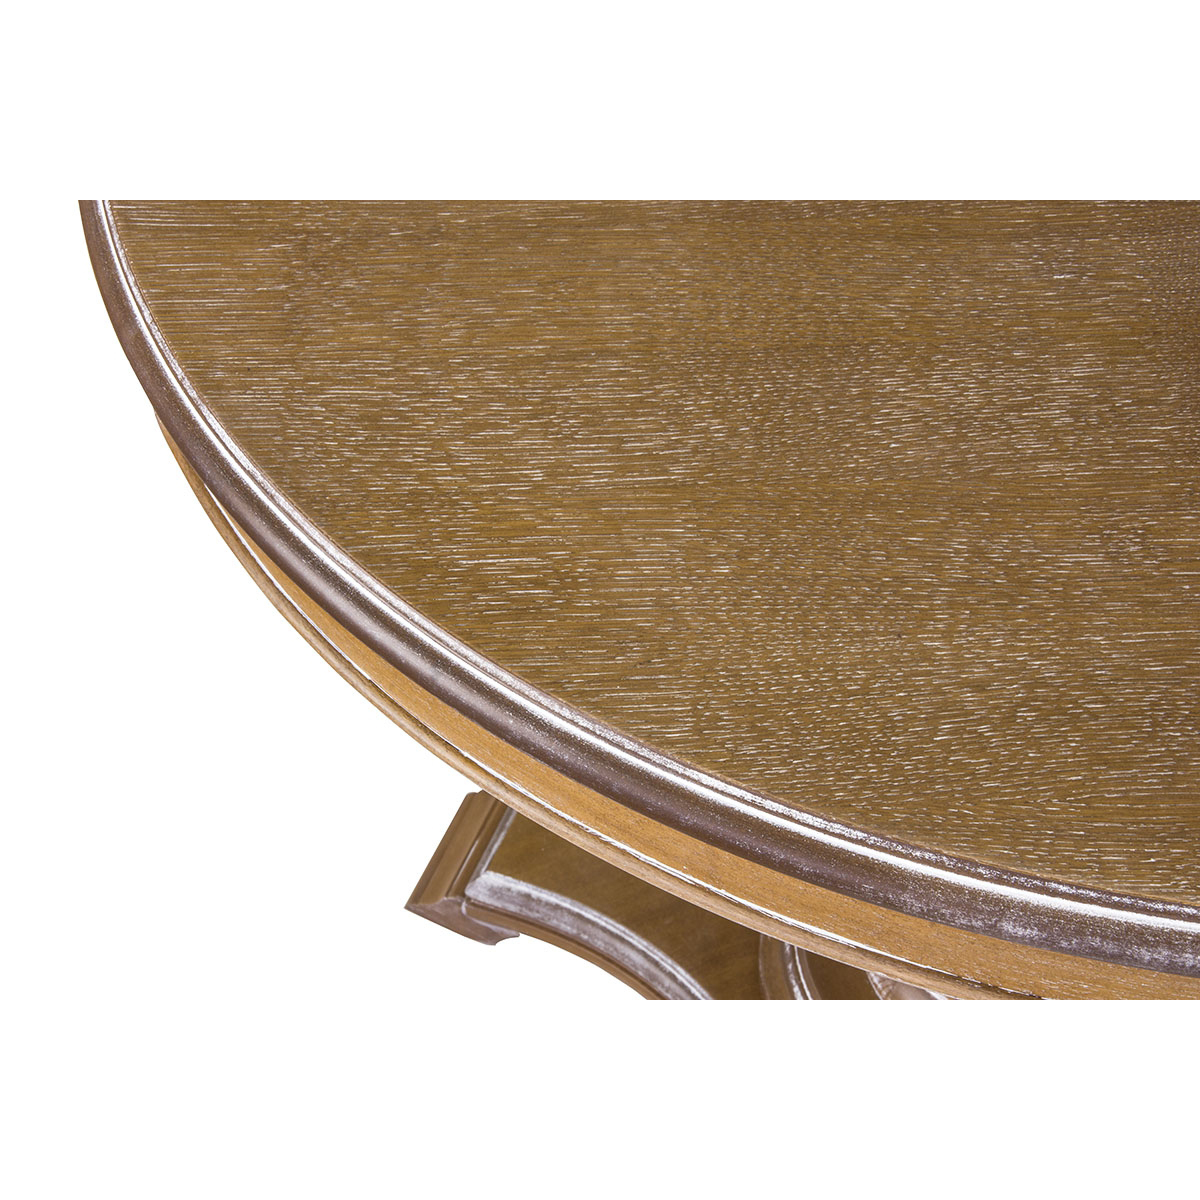 Стол обеденный Стелла Капри, круглый раздвижной, 105(141)x105x75 см